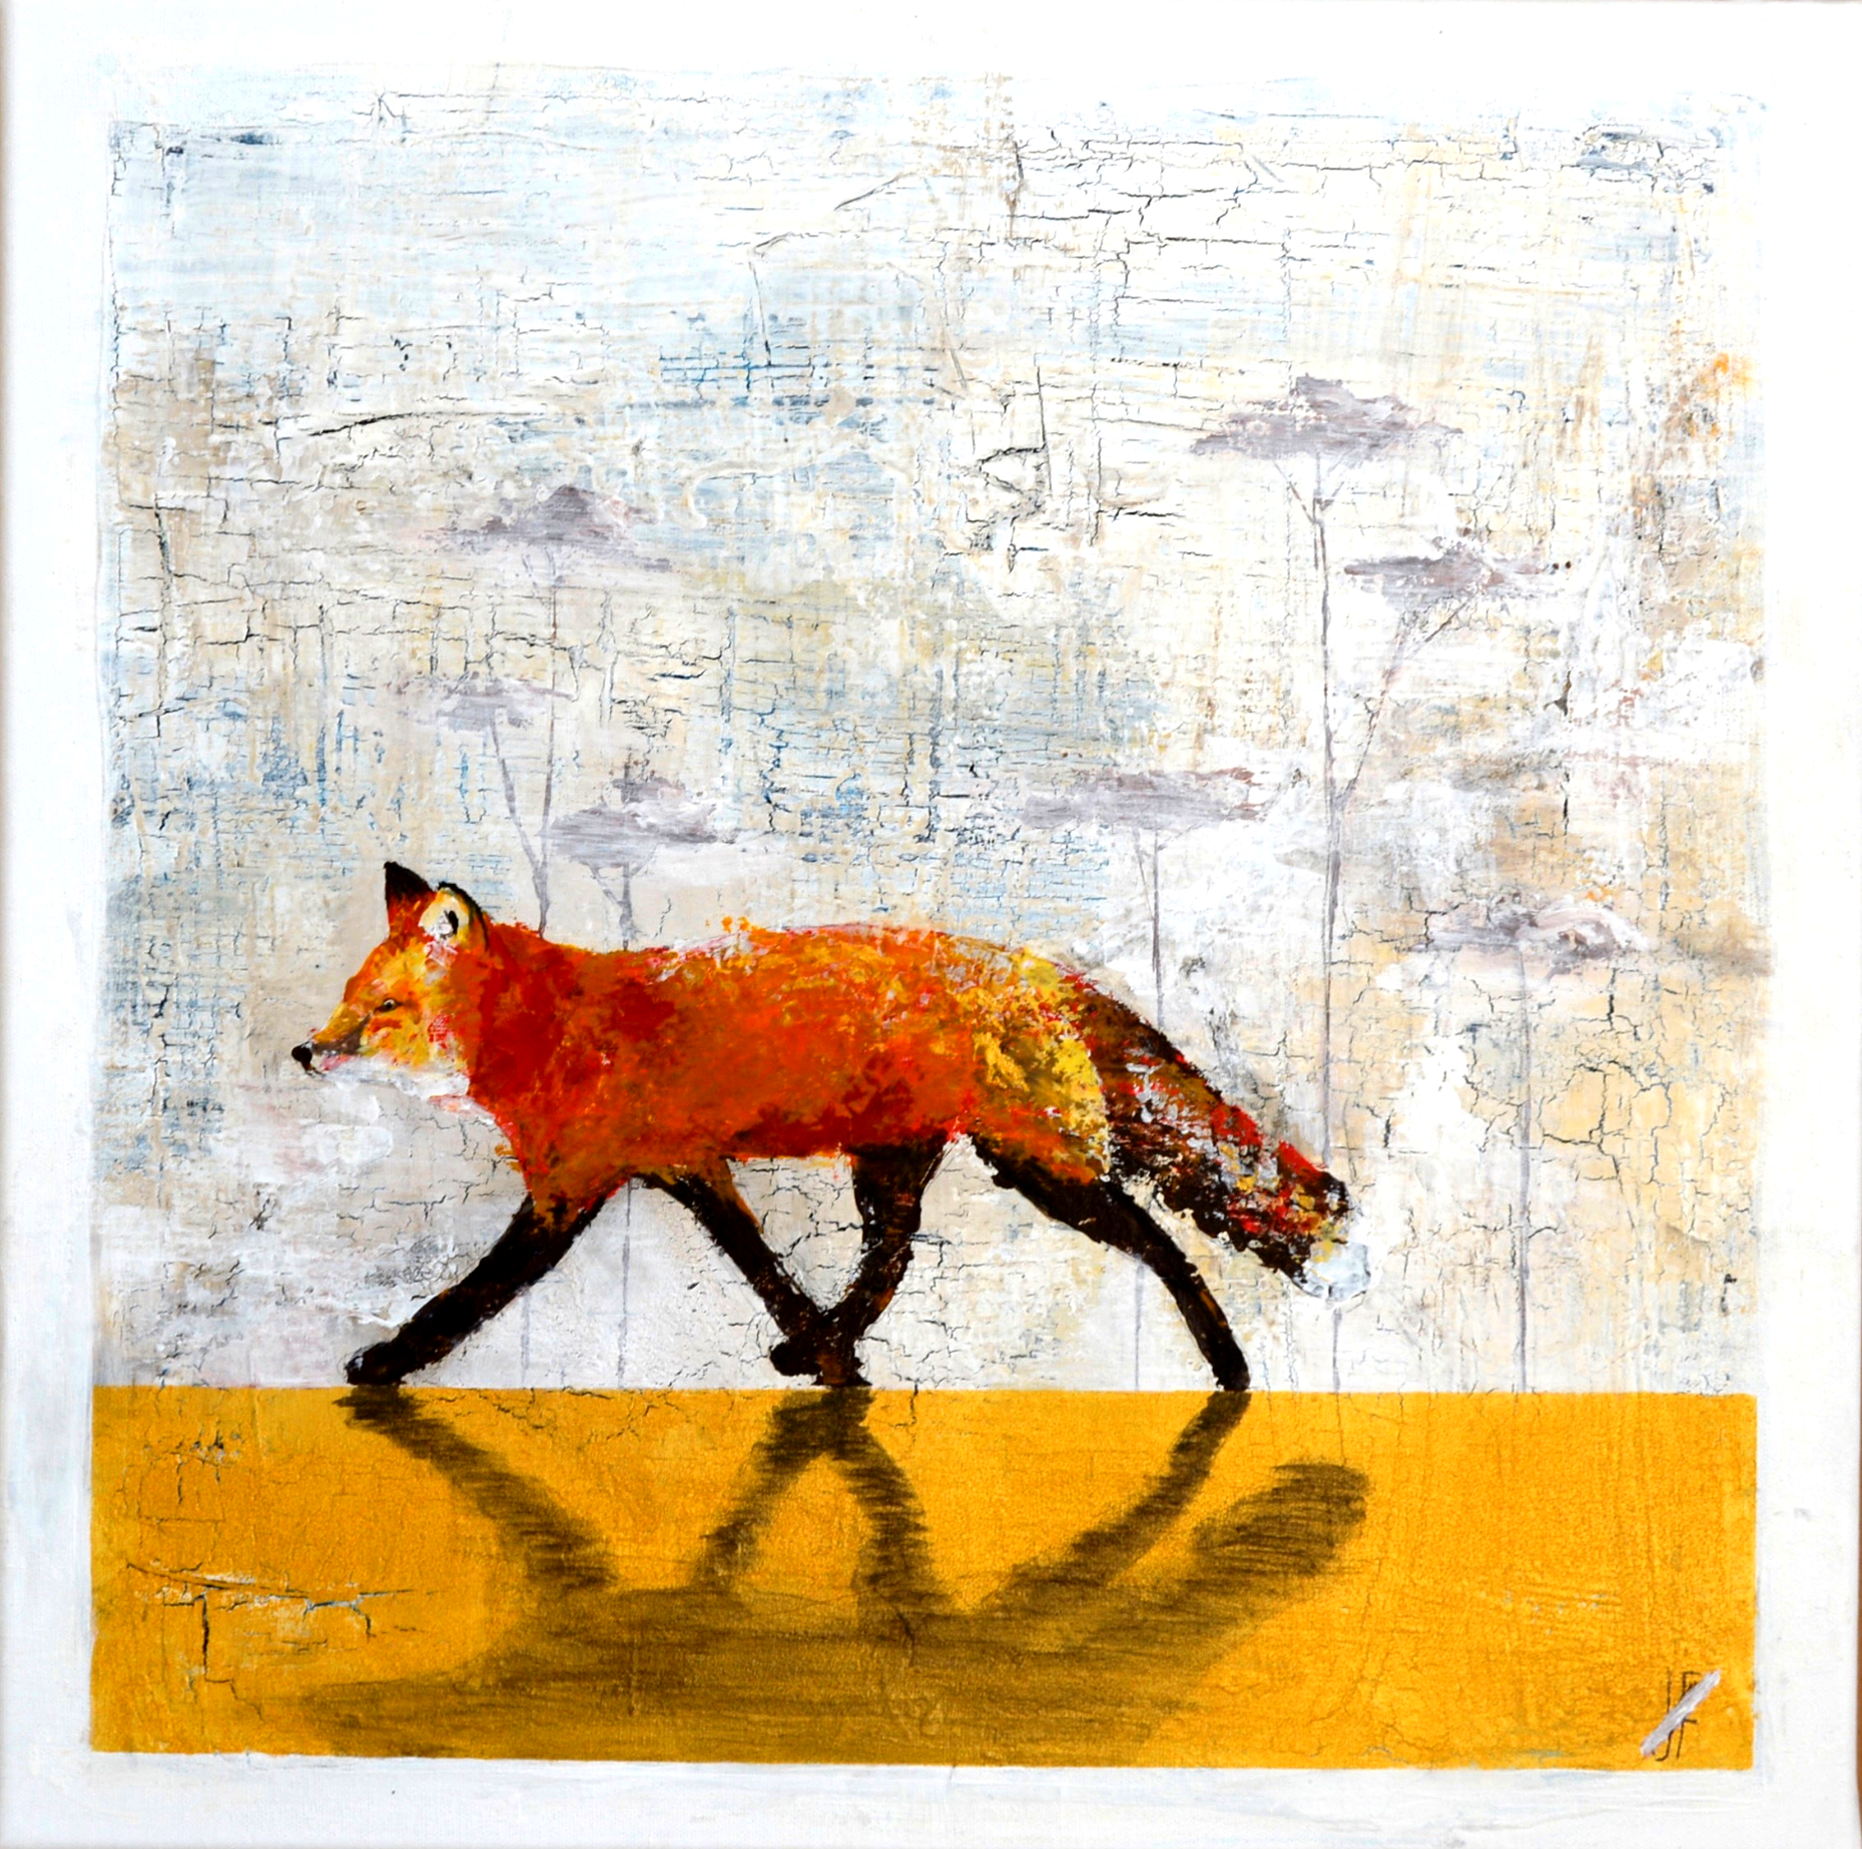 FUCHS - Acryl auf Leinwand - 50x50cm - Dieses handgemalte Einzelstück zeigt einen roten Fuchs vor hellem abstraktem Hintergrund.